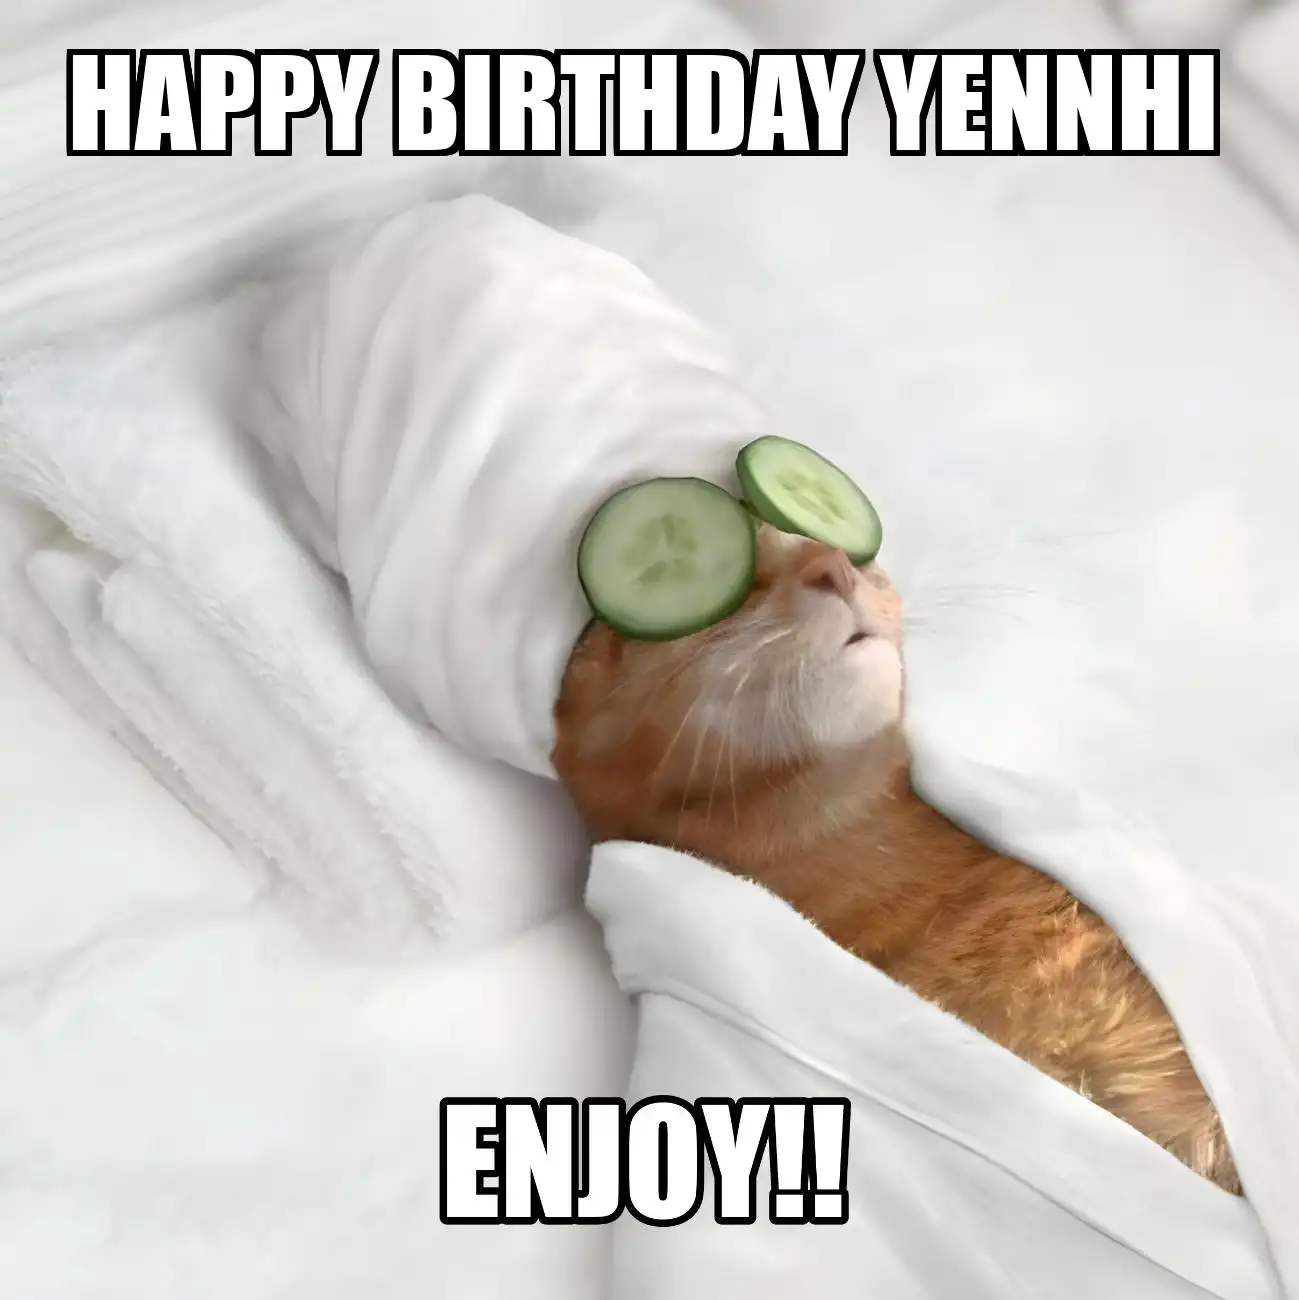 Happy Birthday Yennhi Enjoy Cat Meme